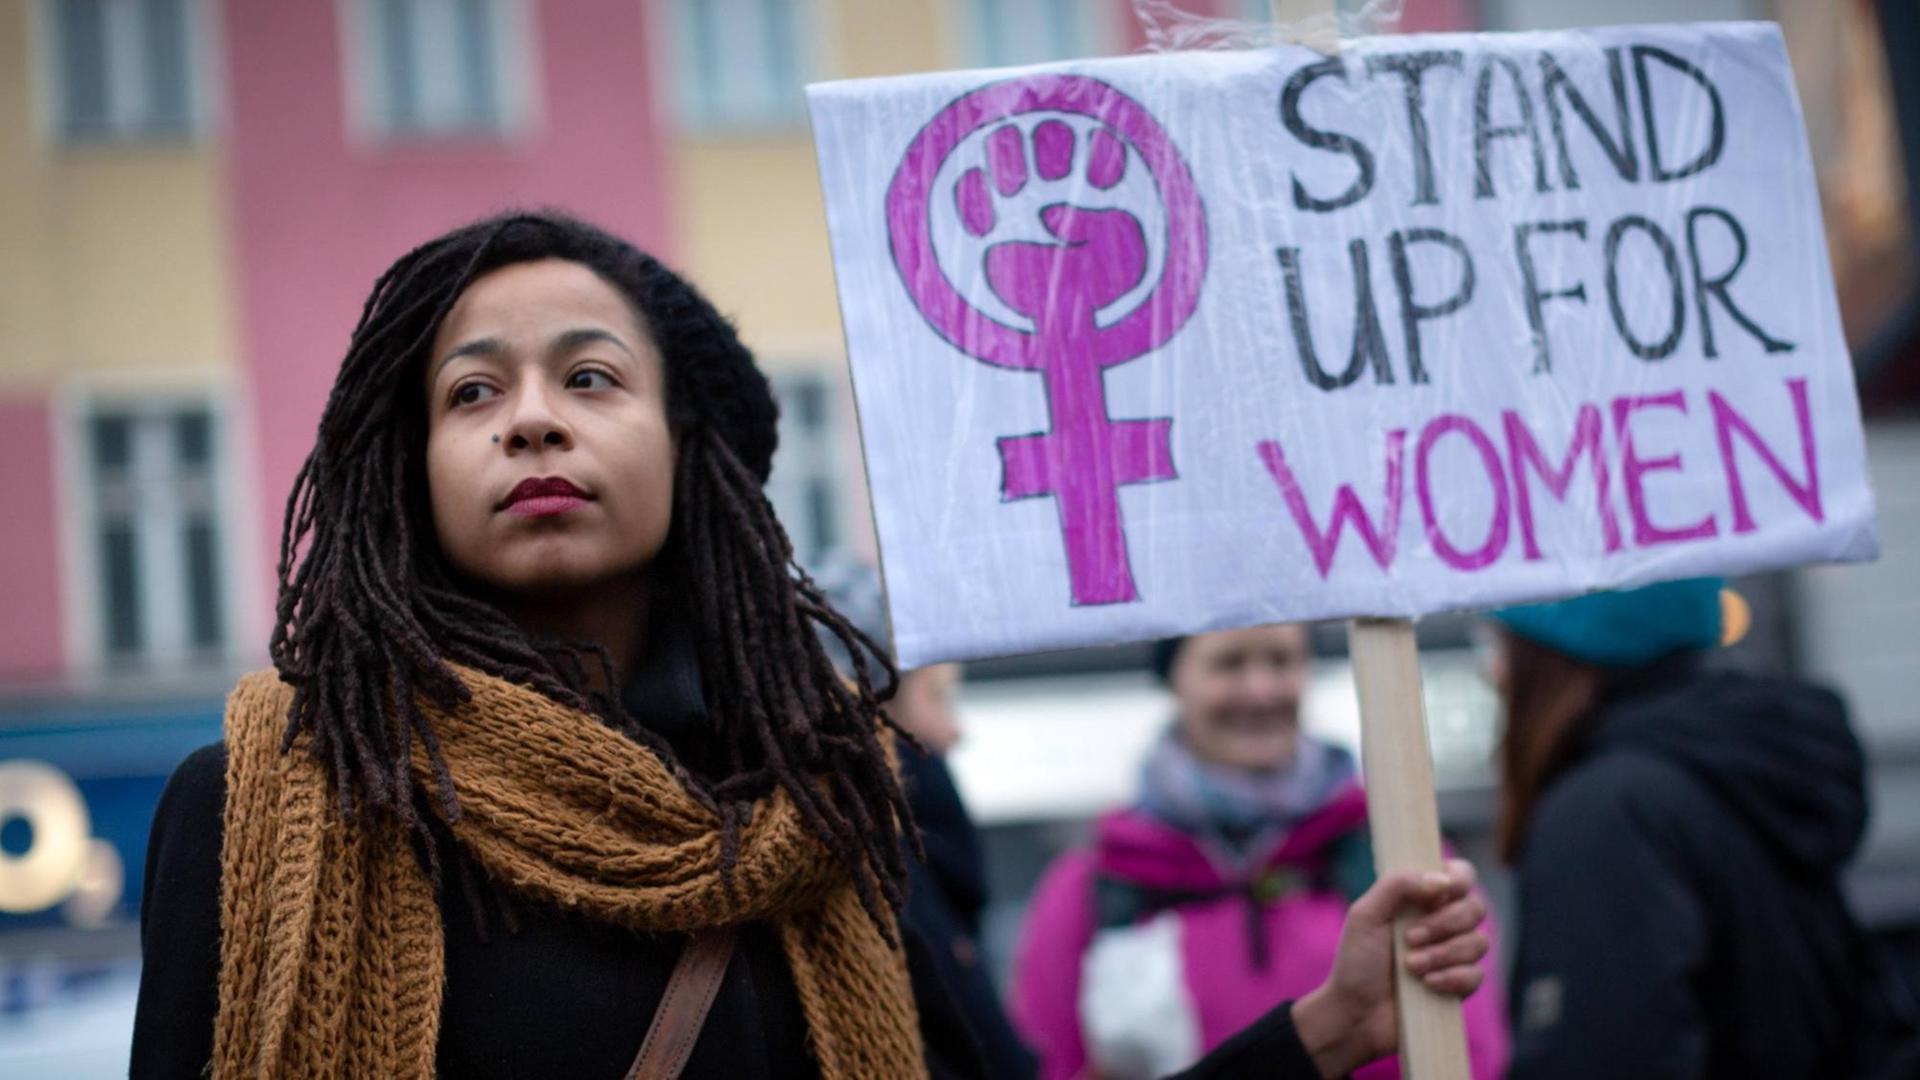 Das Foto zeigt eine junge Demonstrantin auf dem internationalen Frauentag vom 8. März 2019. Sie hält ein Schild mit der Aufschrift: "Stand up for women"